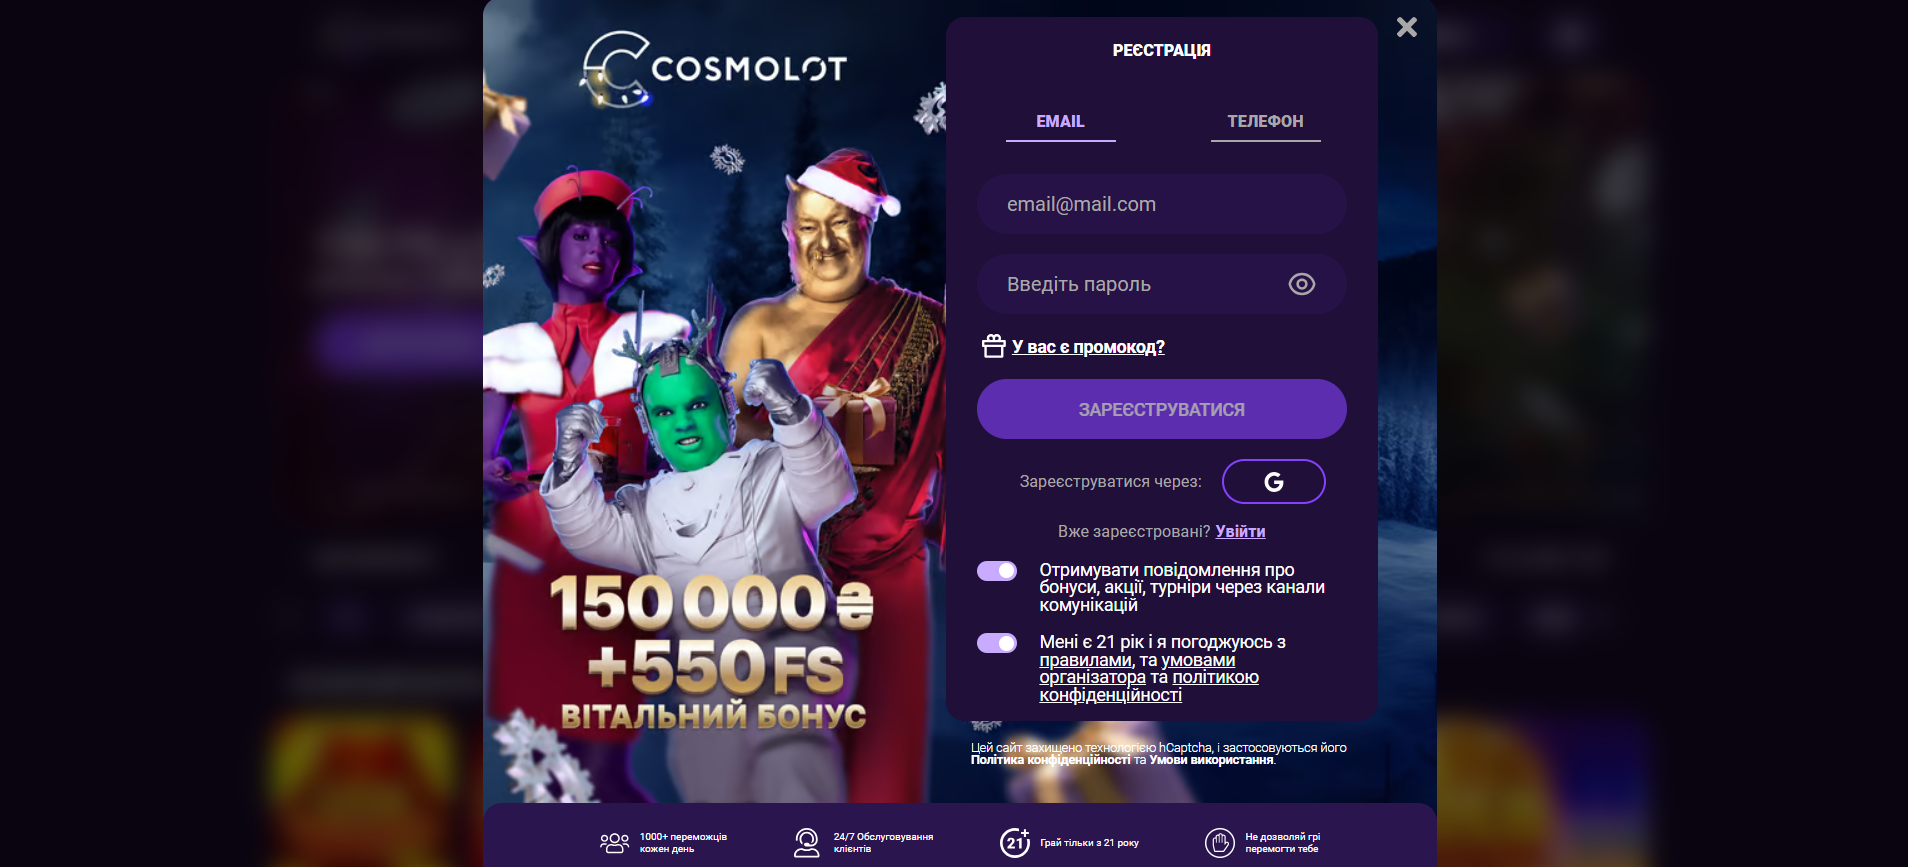 cosmolot online